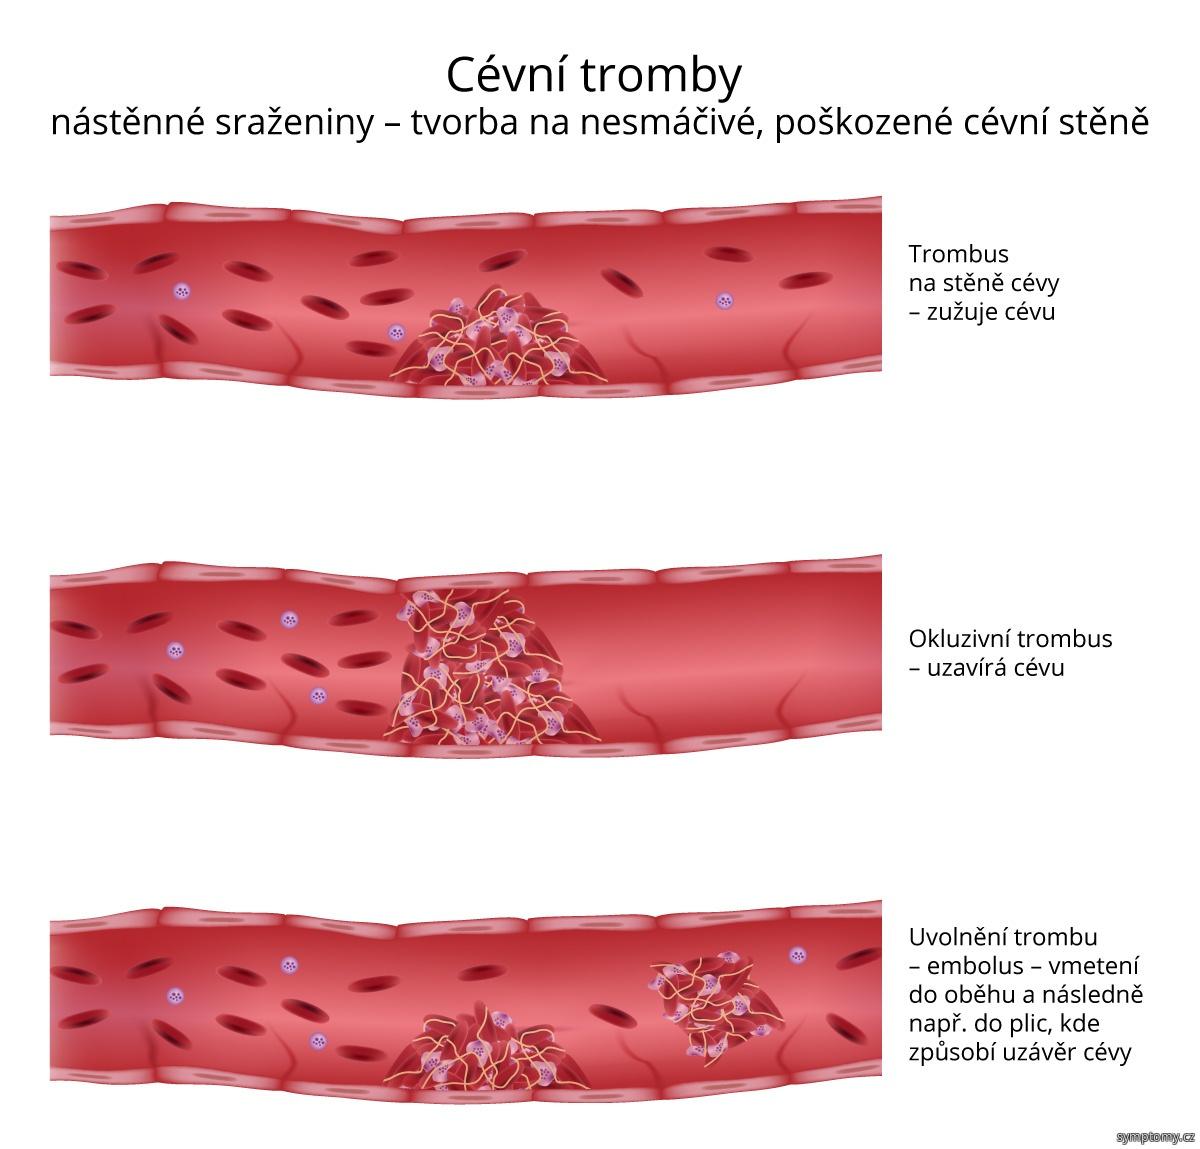 Cévní tromby